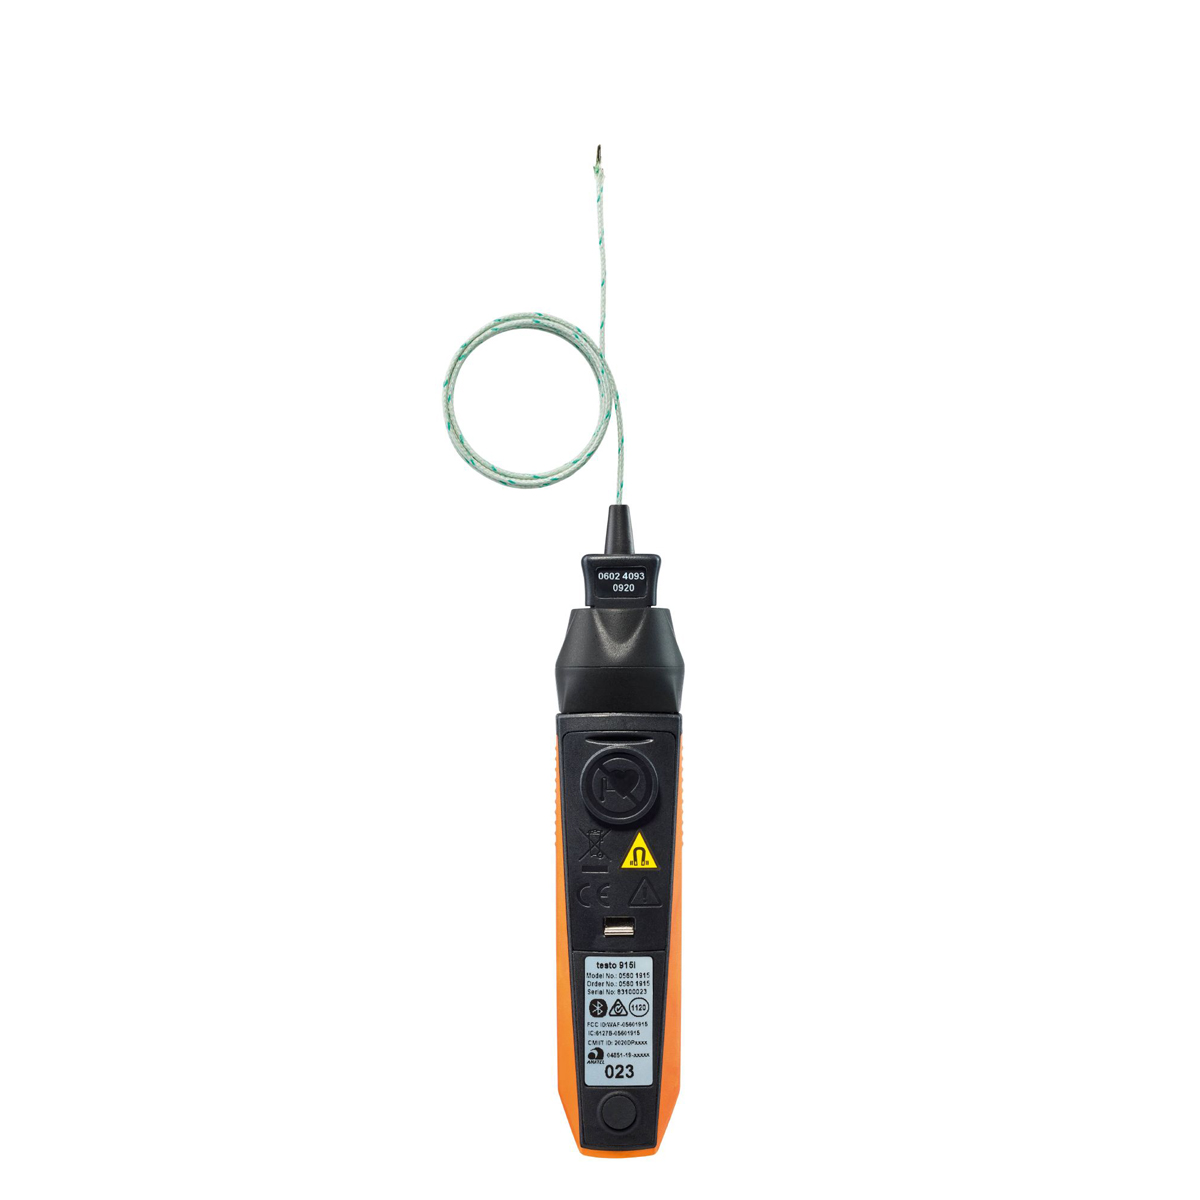 Testo 915 i - Thermometer mit flexiblem Fühler - 0563 4915